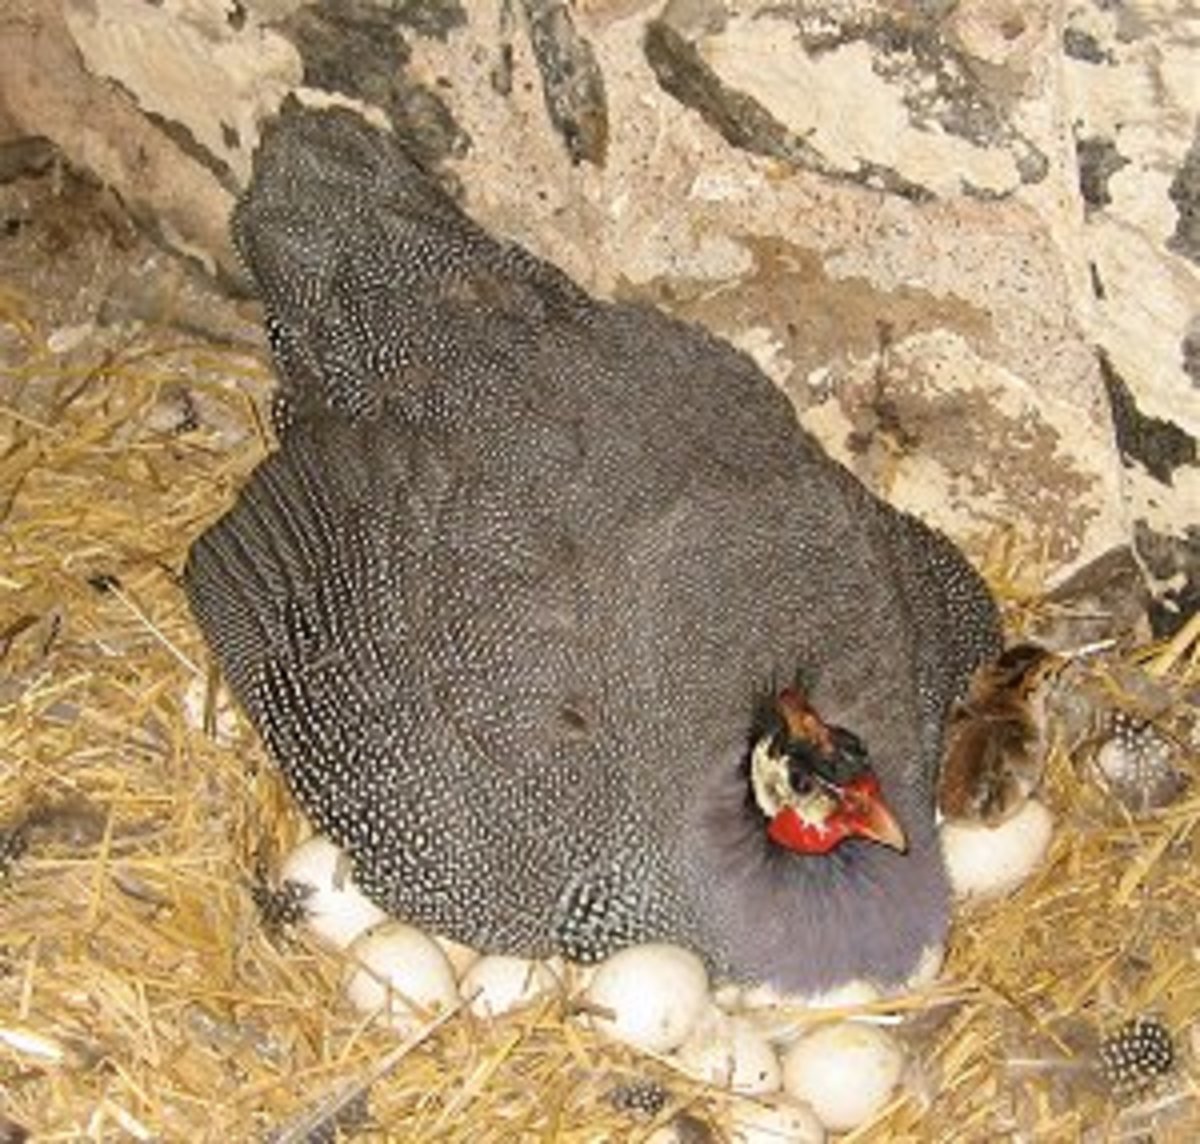 Guinea fowl on nest full of eggs.